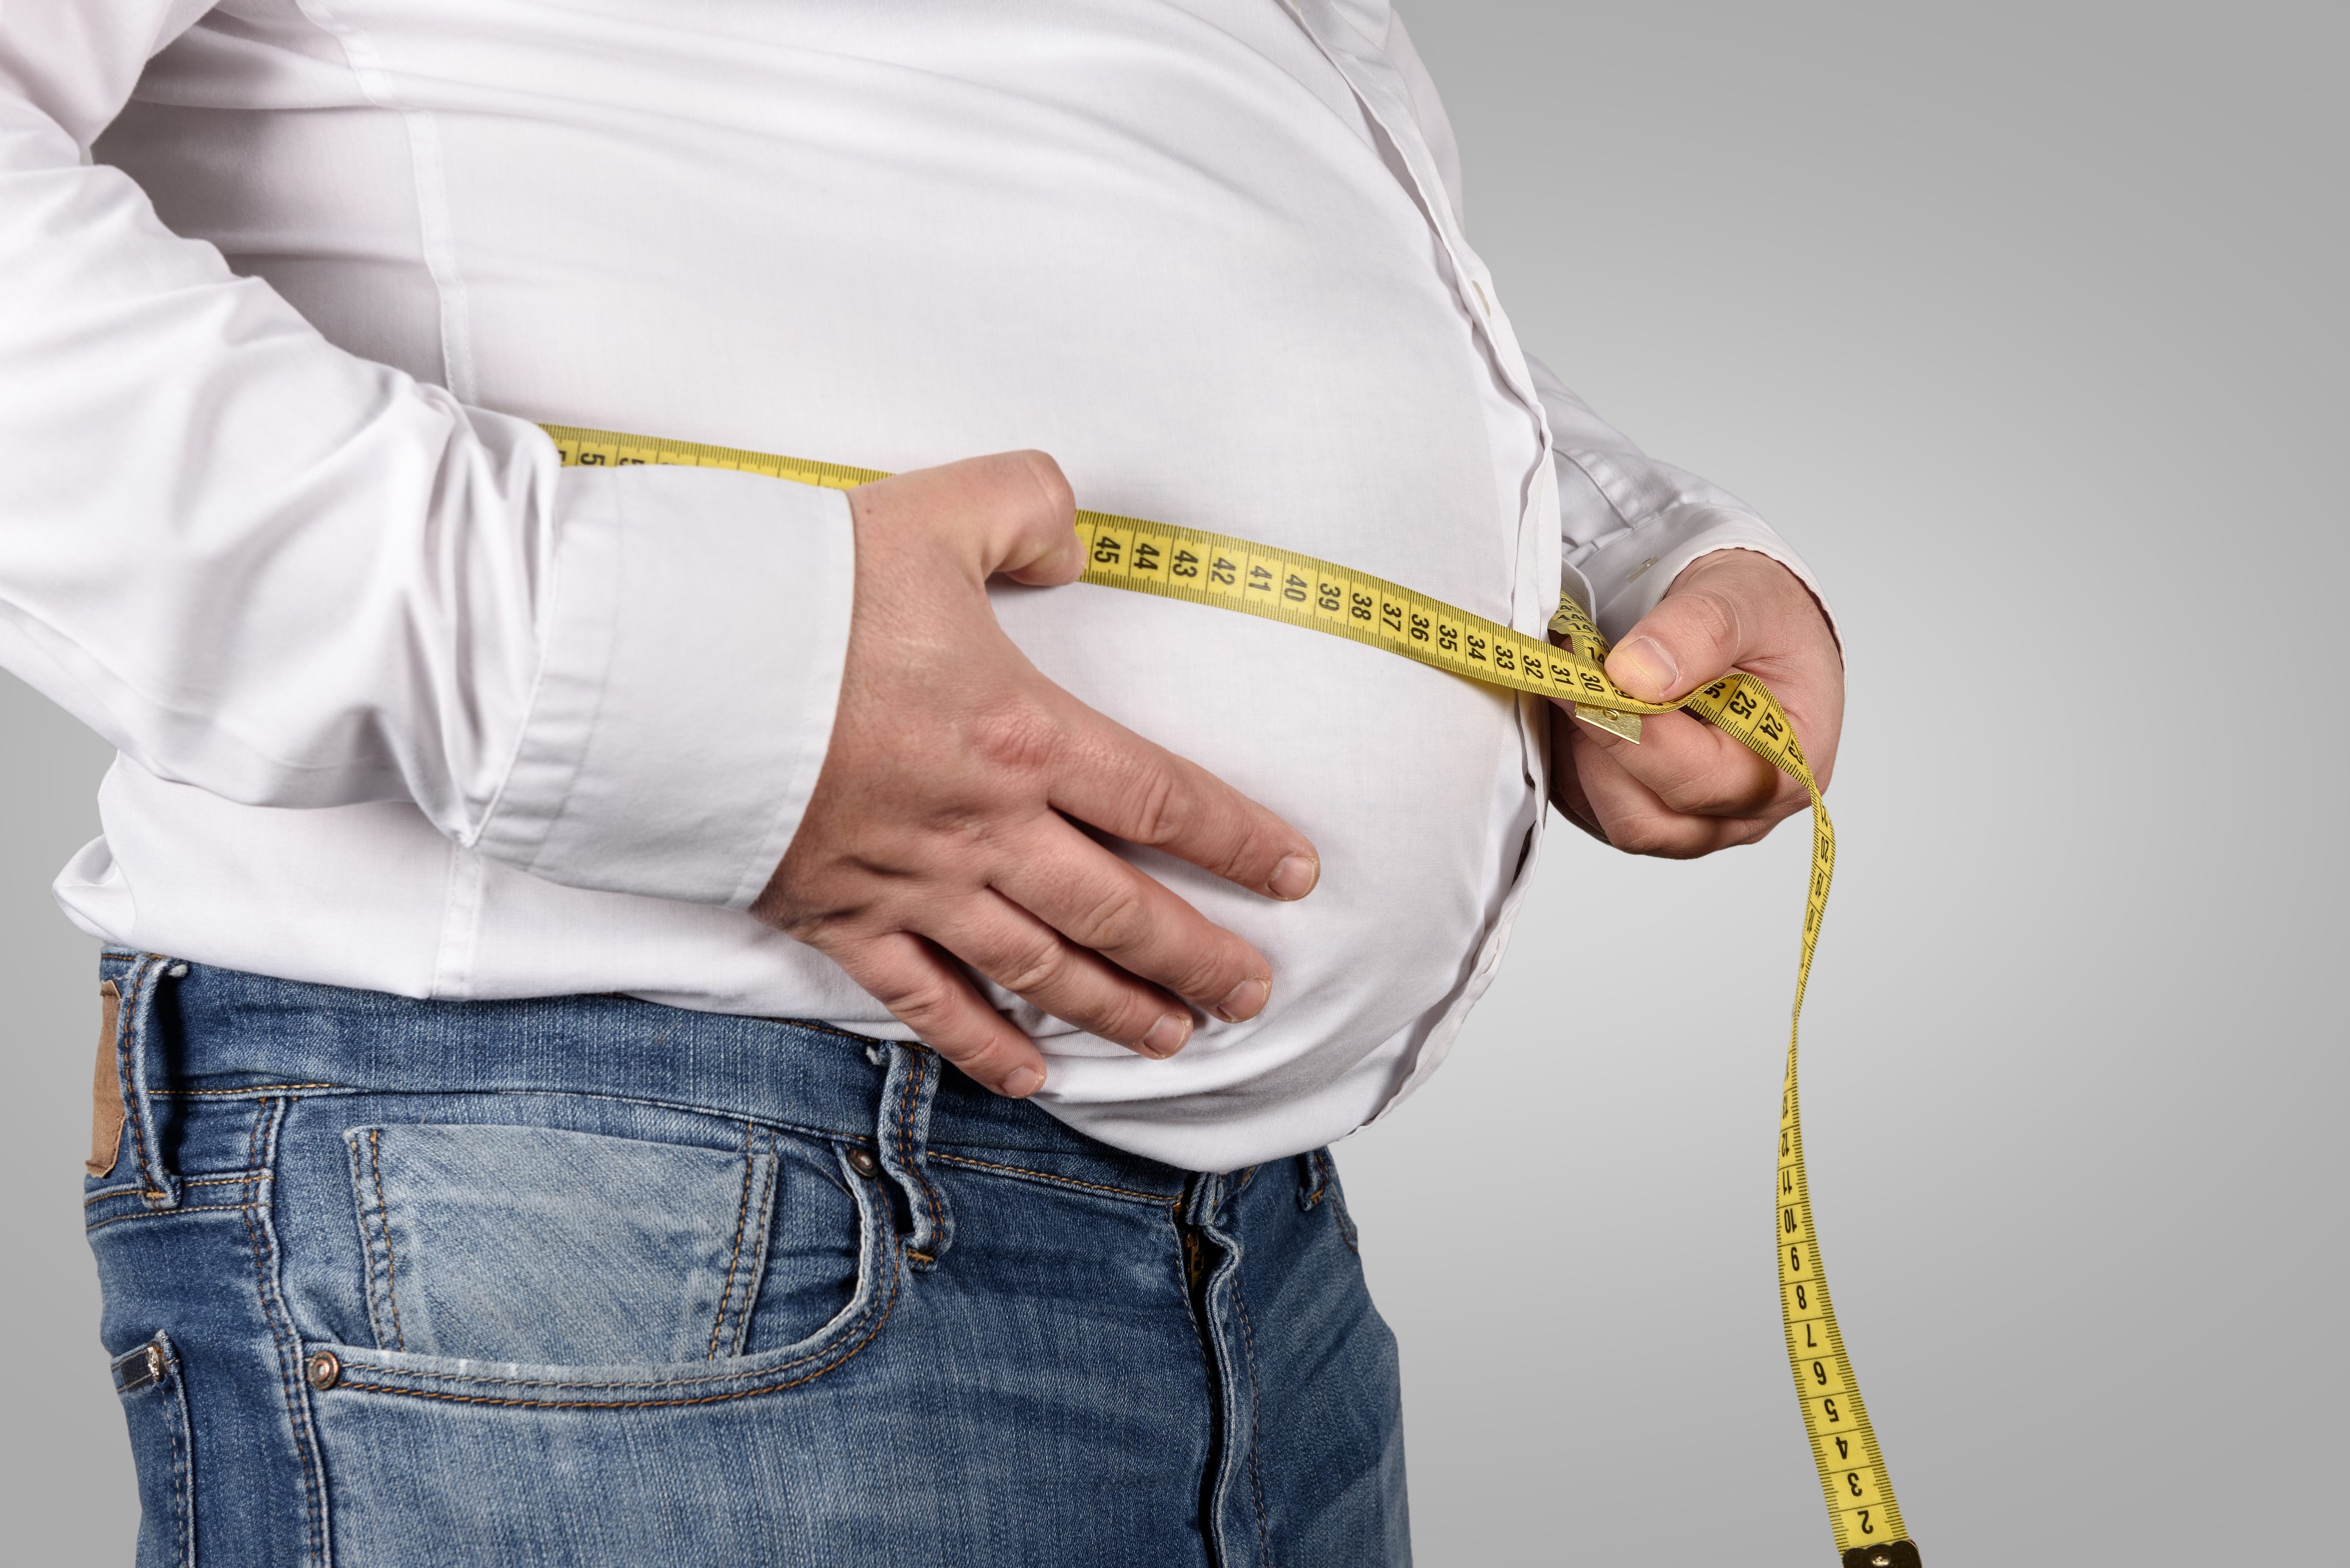 العوامل الوزن الزائد المؤثرة على الرشاقة من من العوامل